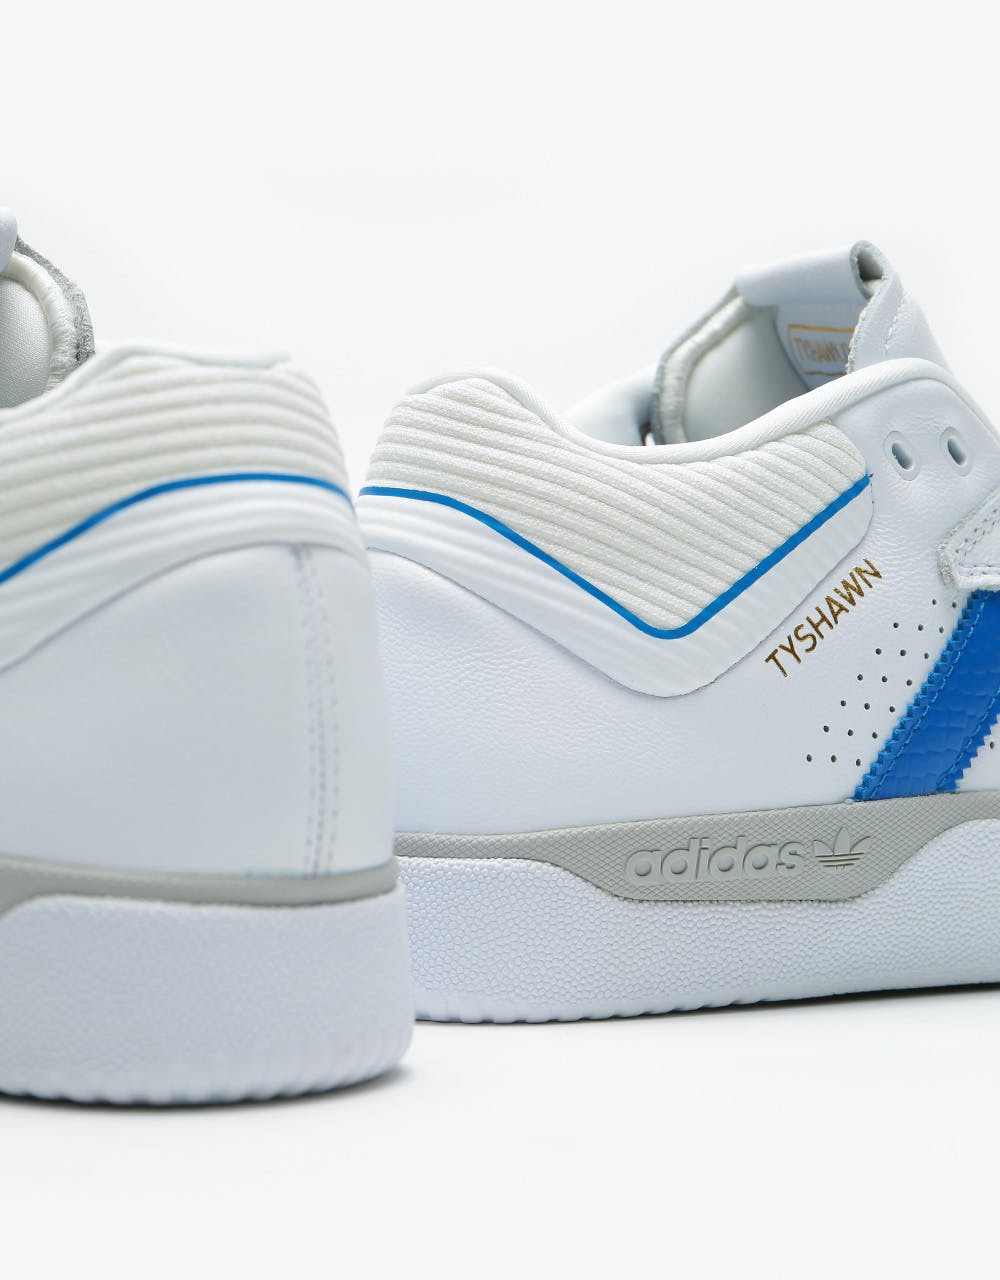 Adidas Tyshawn Skate Shoes - White/Blue/Gold Metallic